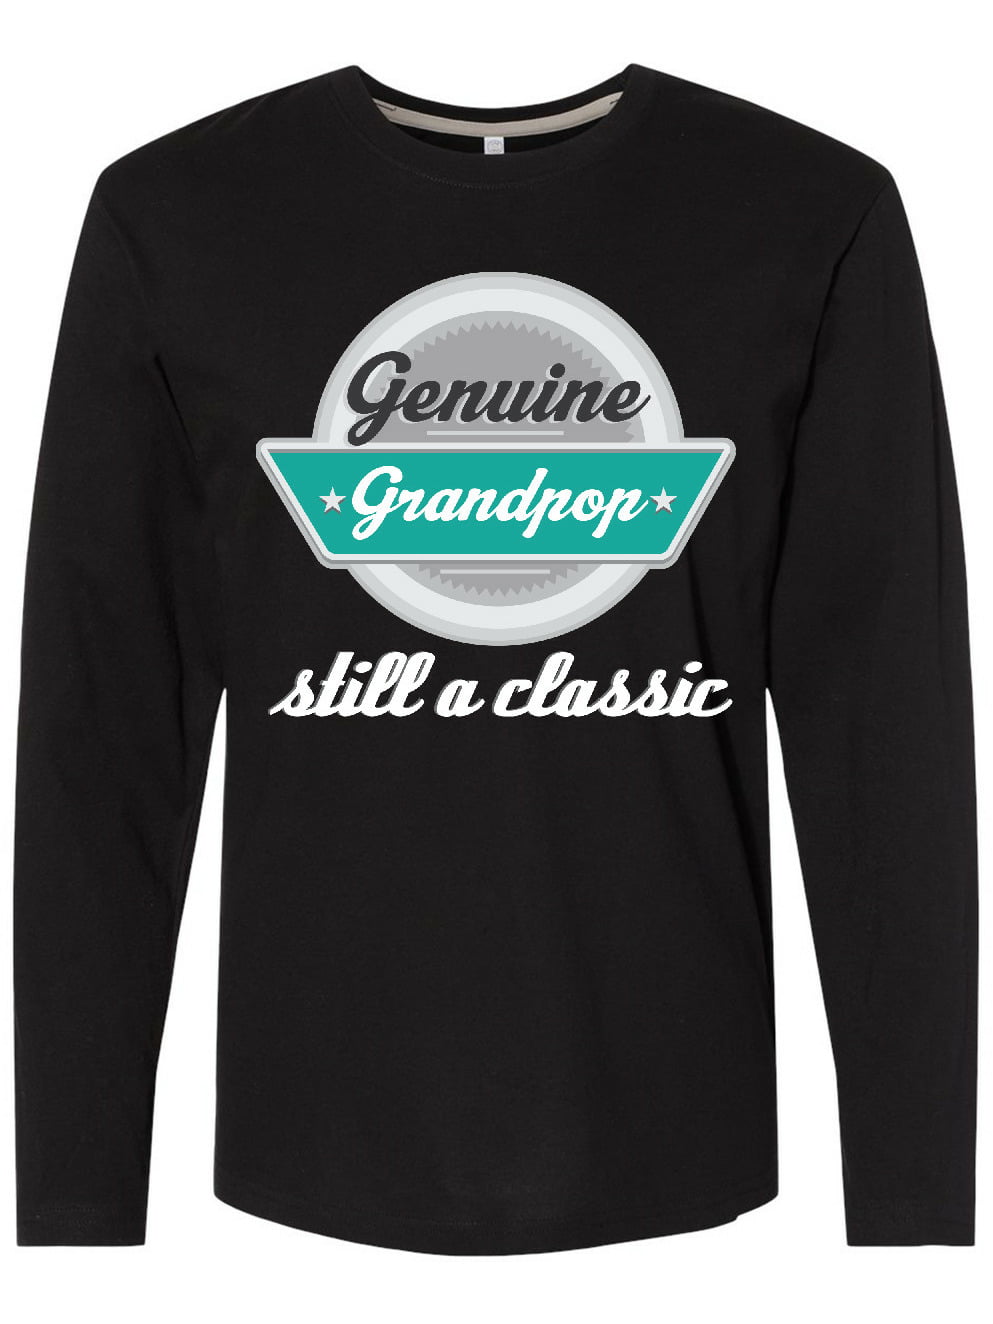 vintage t shirts funny grandpa shirts, grandpa tshirt custom t shirts grandpa tshirts supreme t shirt tshirt design printed t shirts